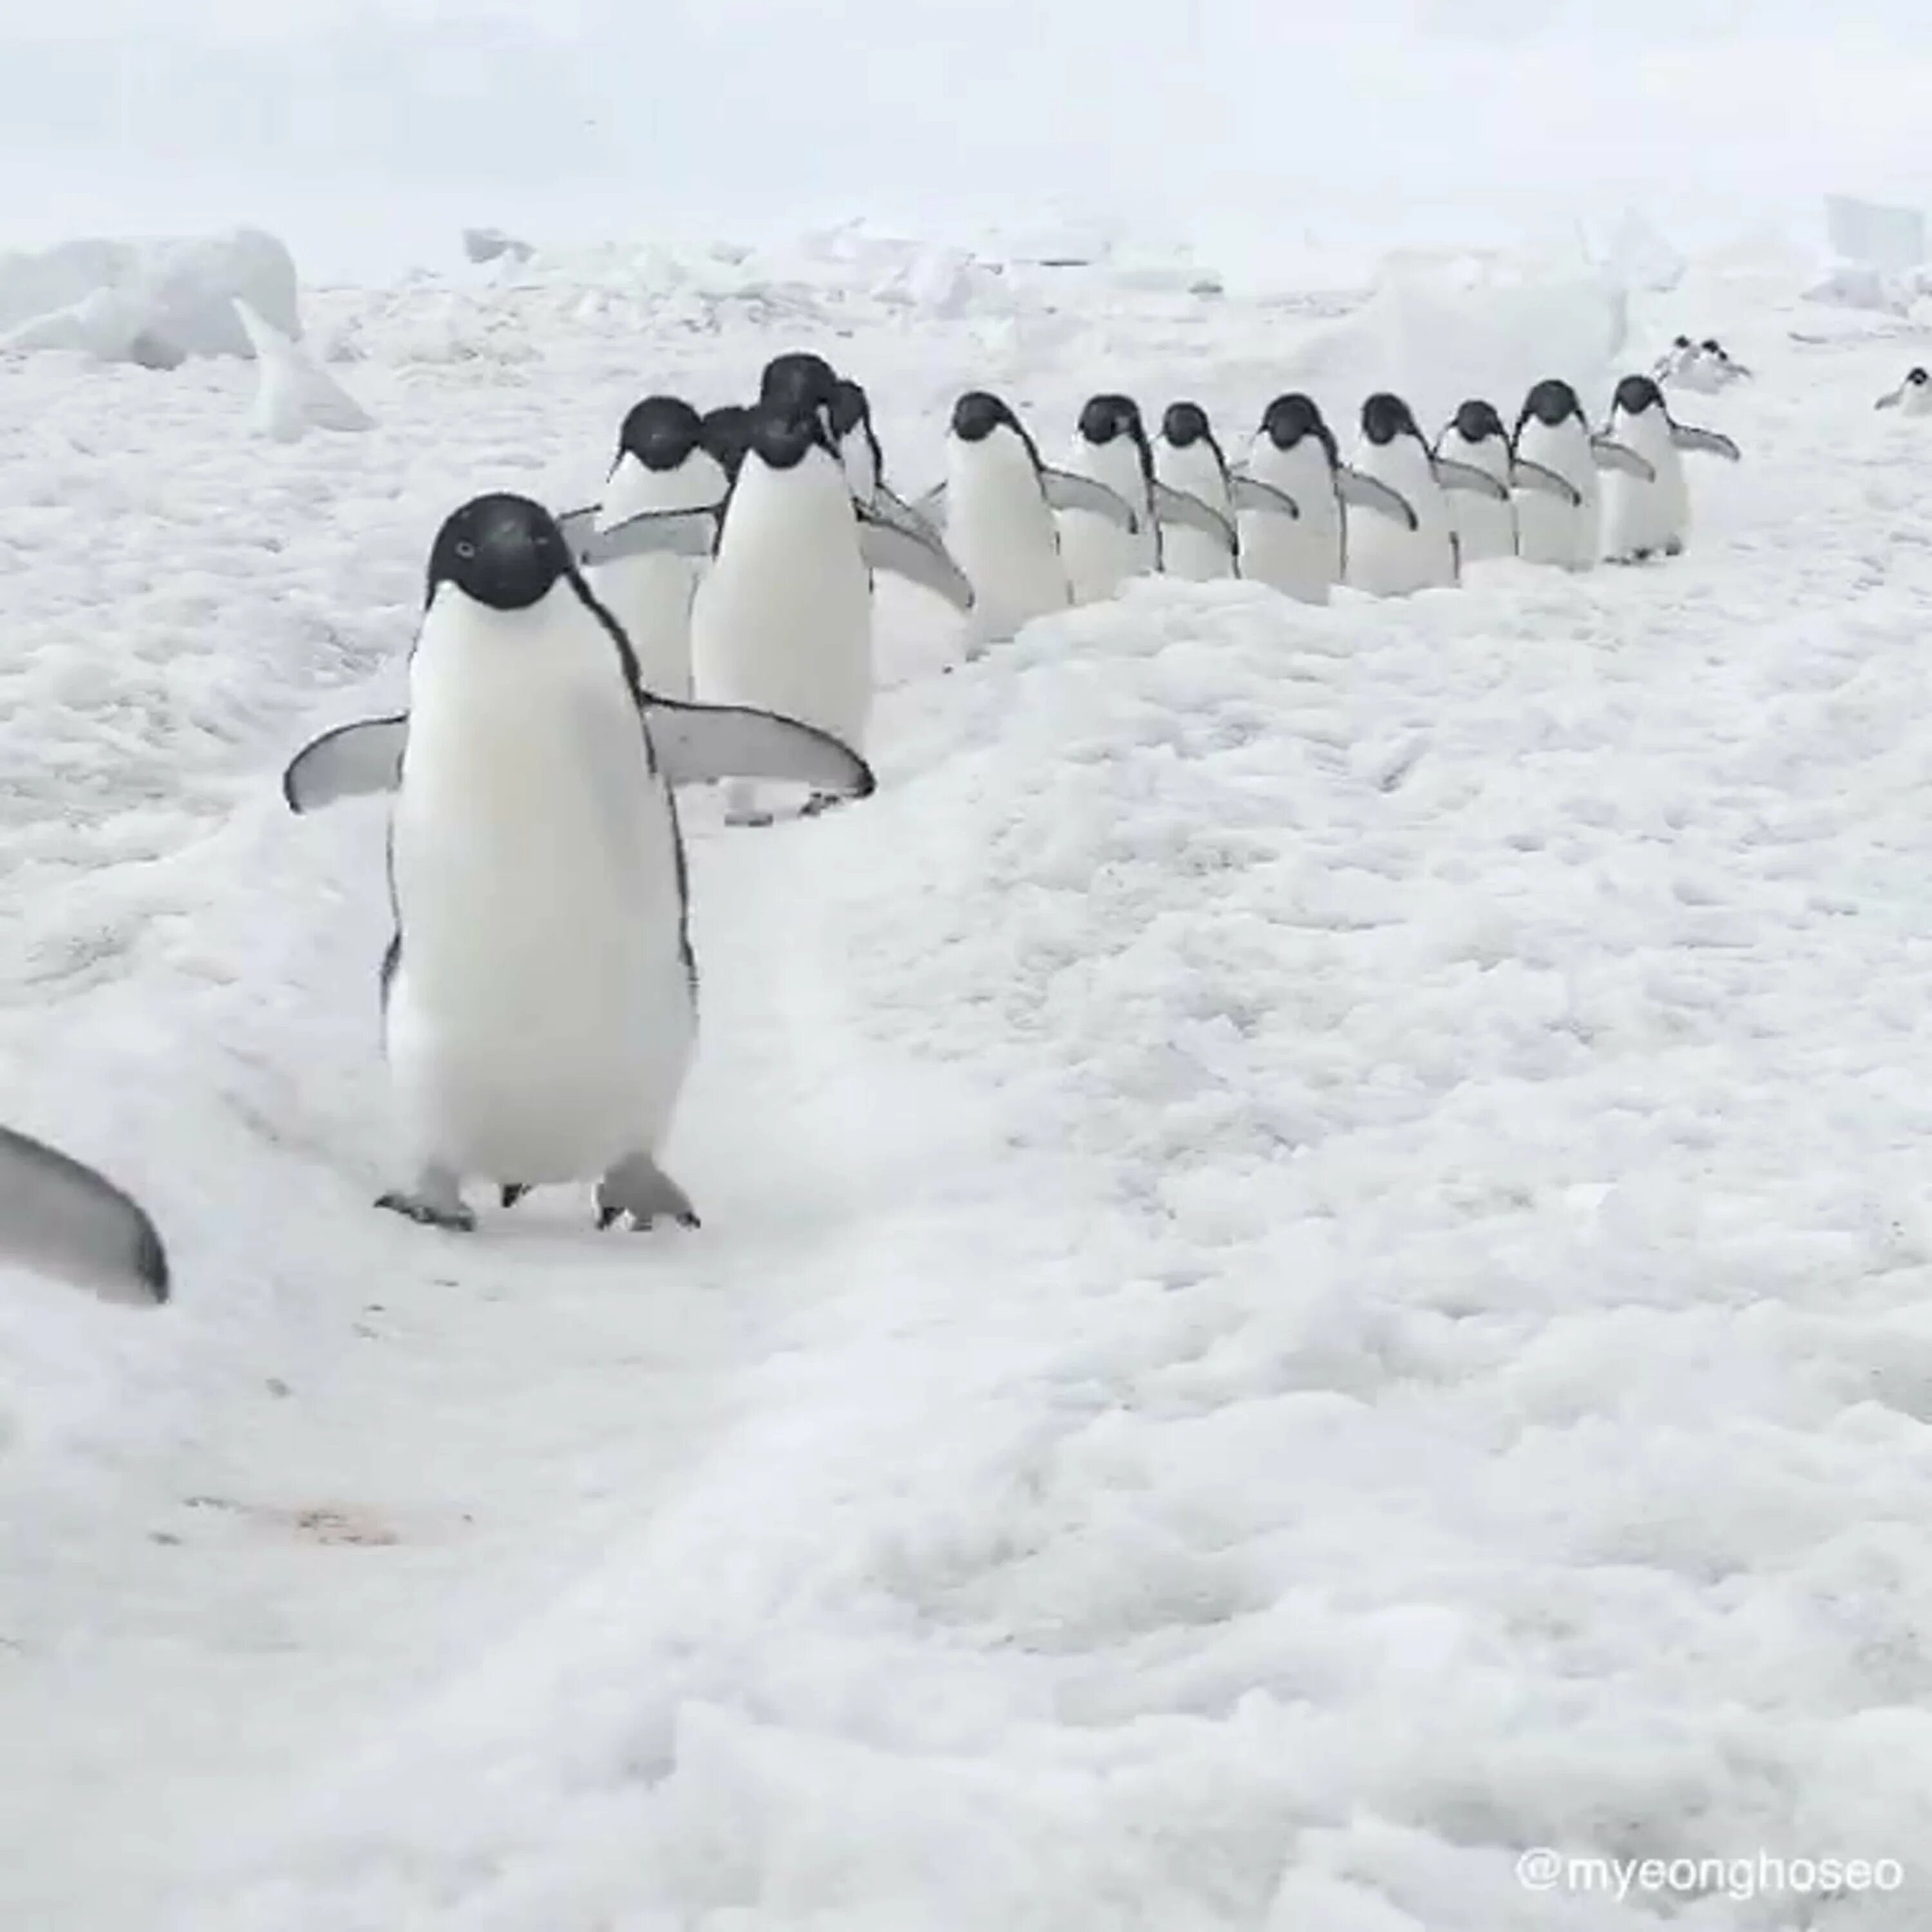 Пингвины идут с пляжа молча. Пингвины идут друг за другом. Два пингвина идут друг за другом. Шли пингвины по тропинке. Два пингвина ходят друг за другом.